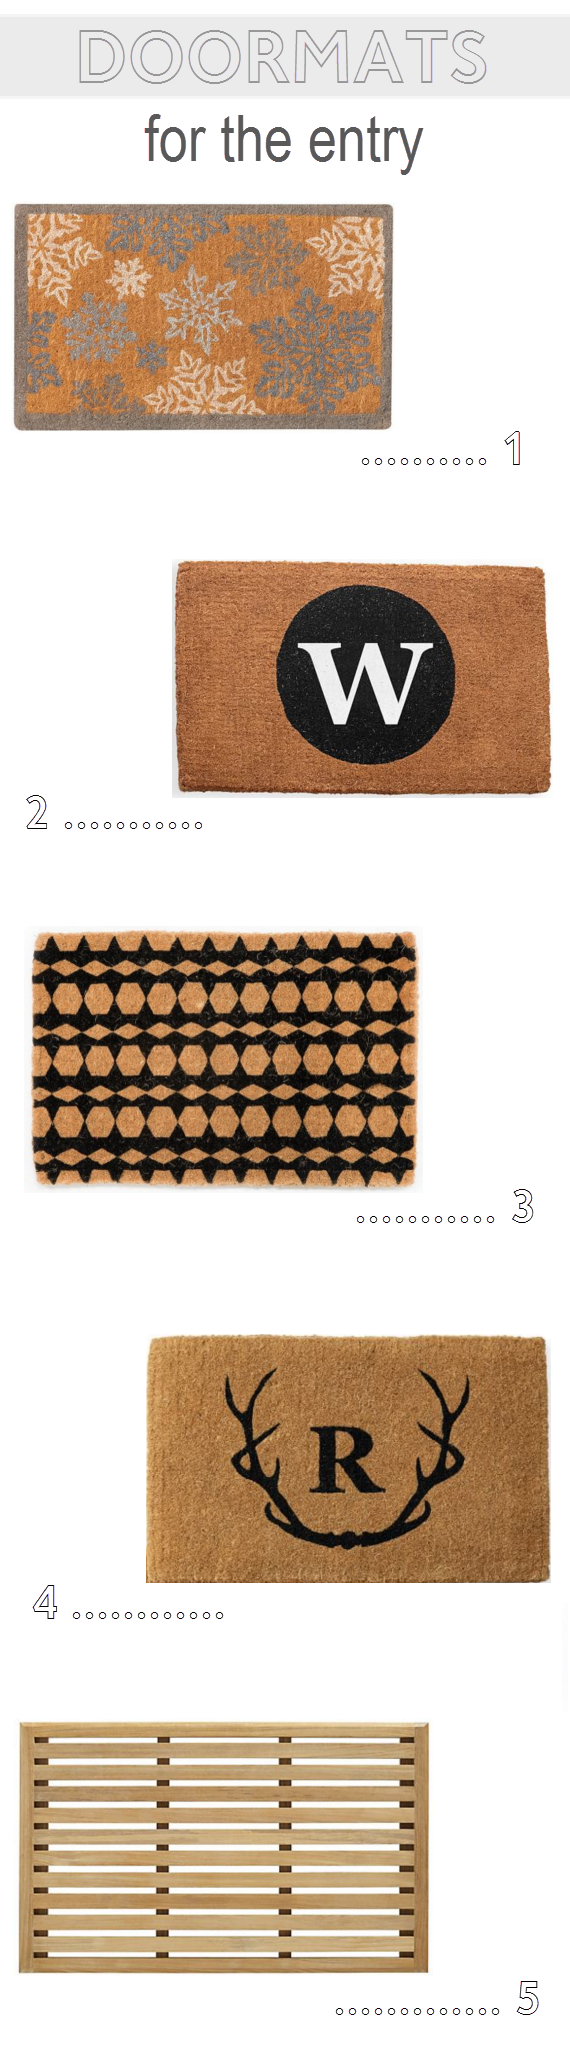 doormat options // one room challenge // @simplifiedbee